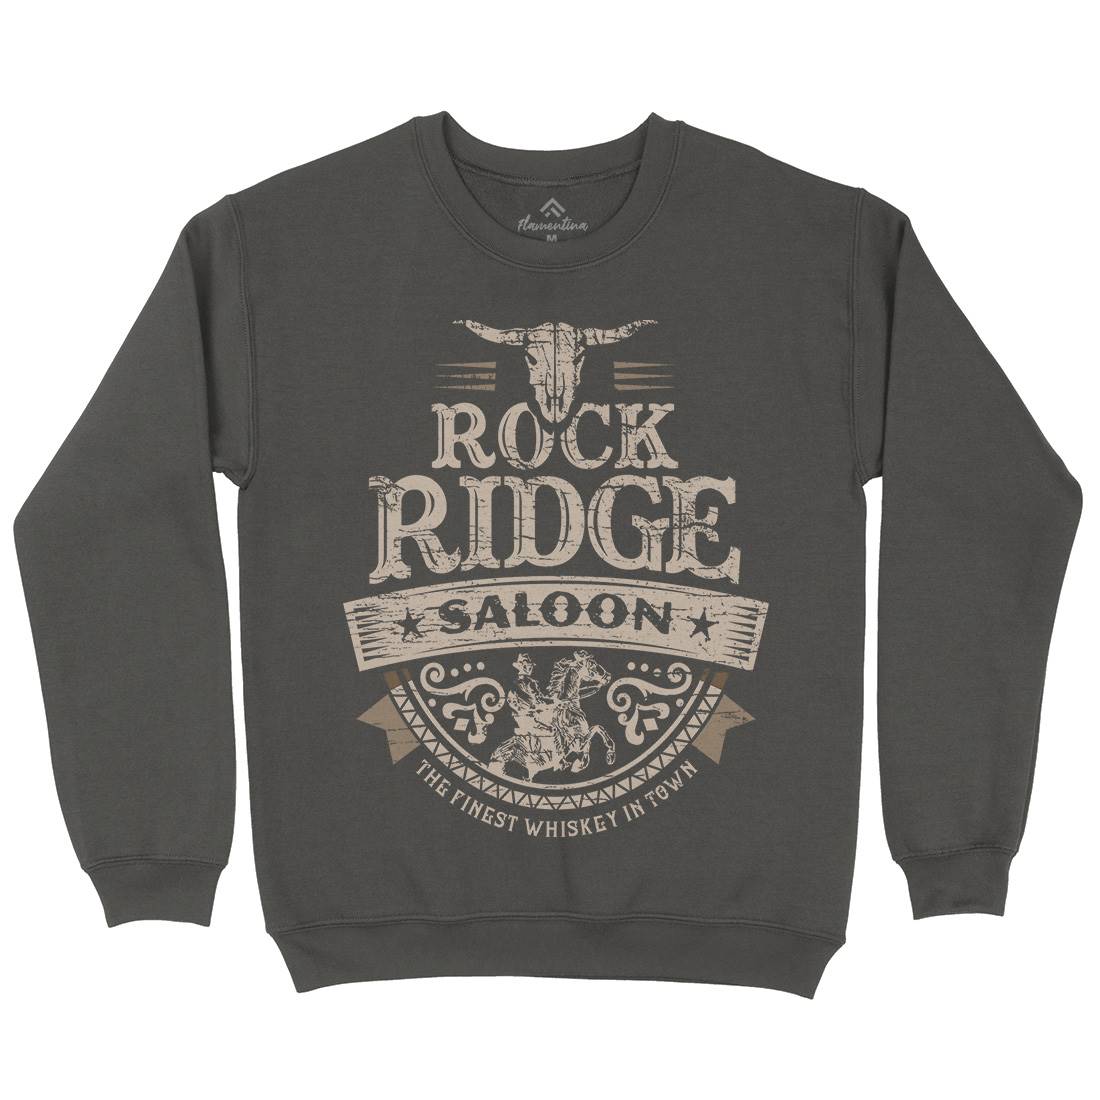 Rock Ridge Saloon Kids Crew Neck Sweatshirt Music D101